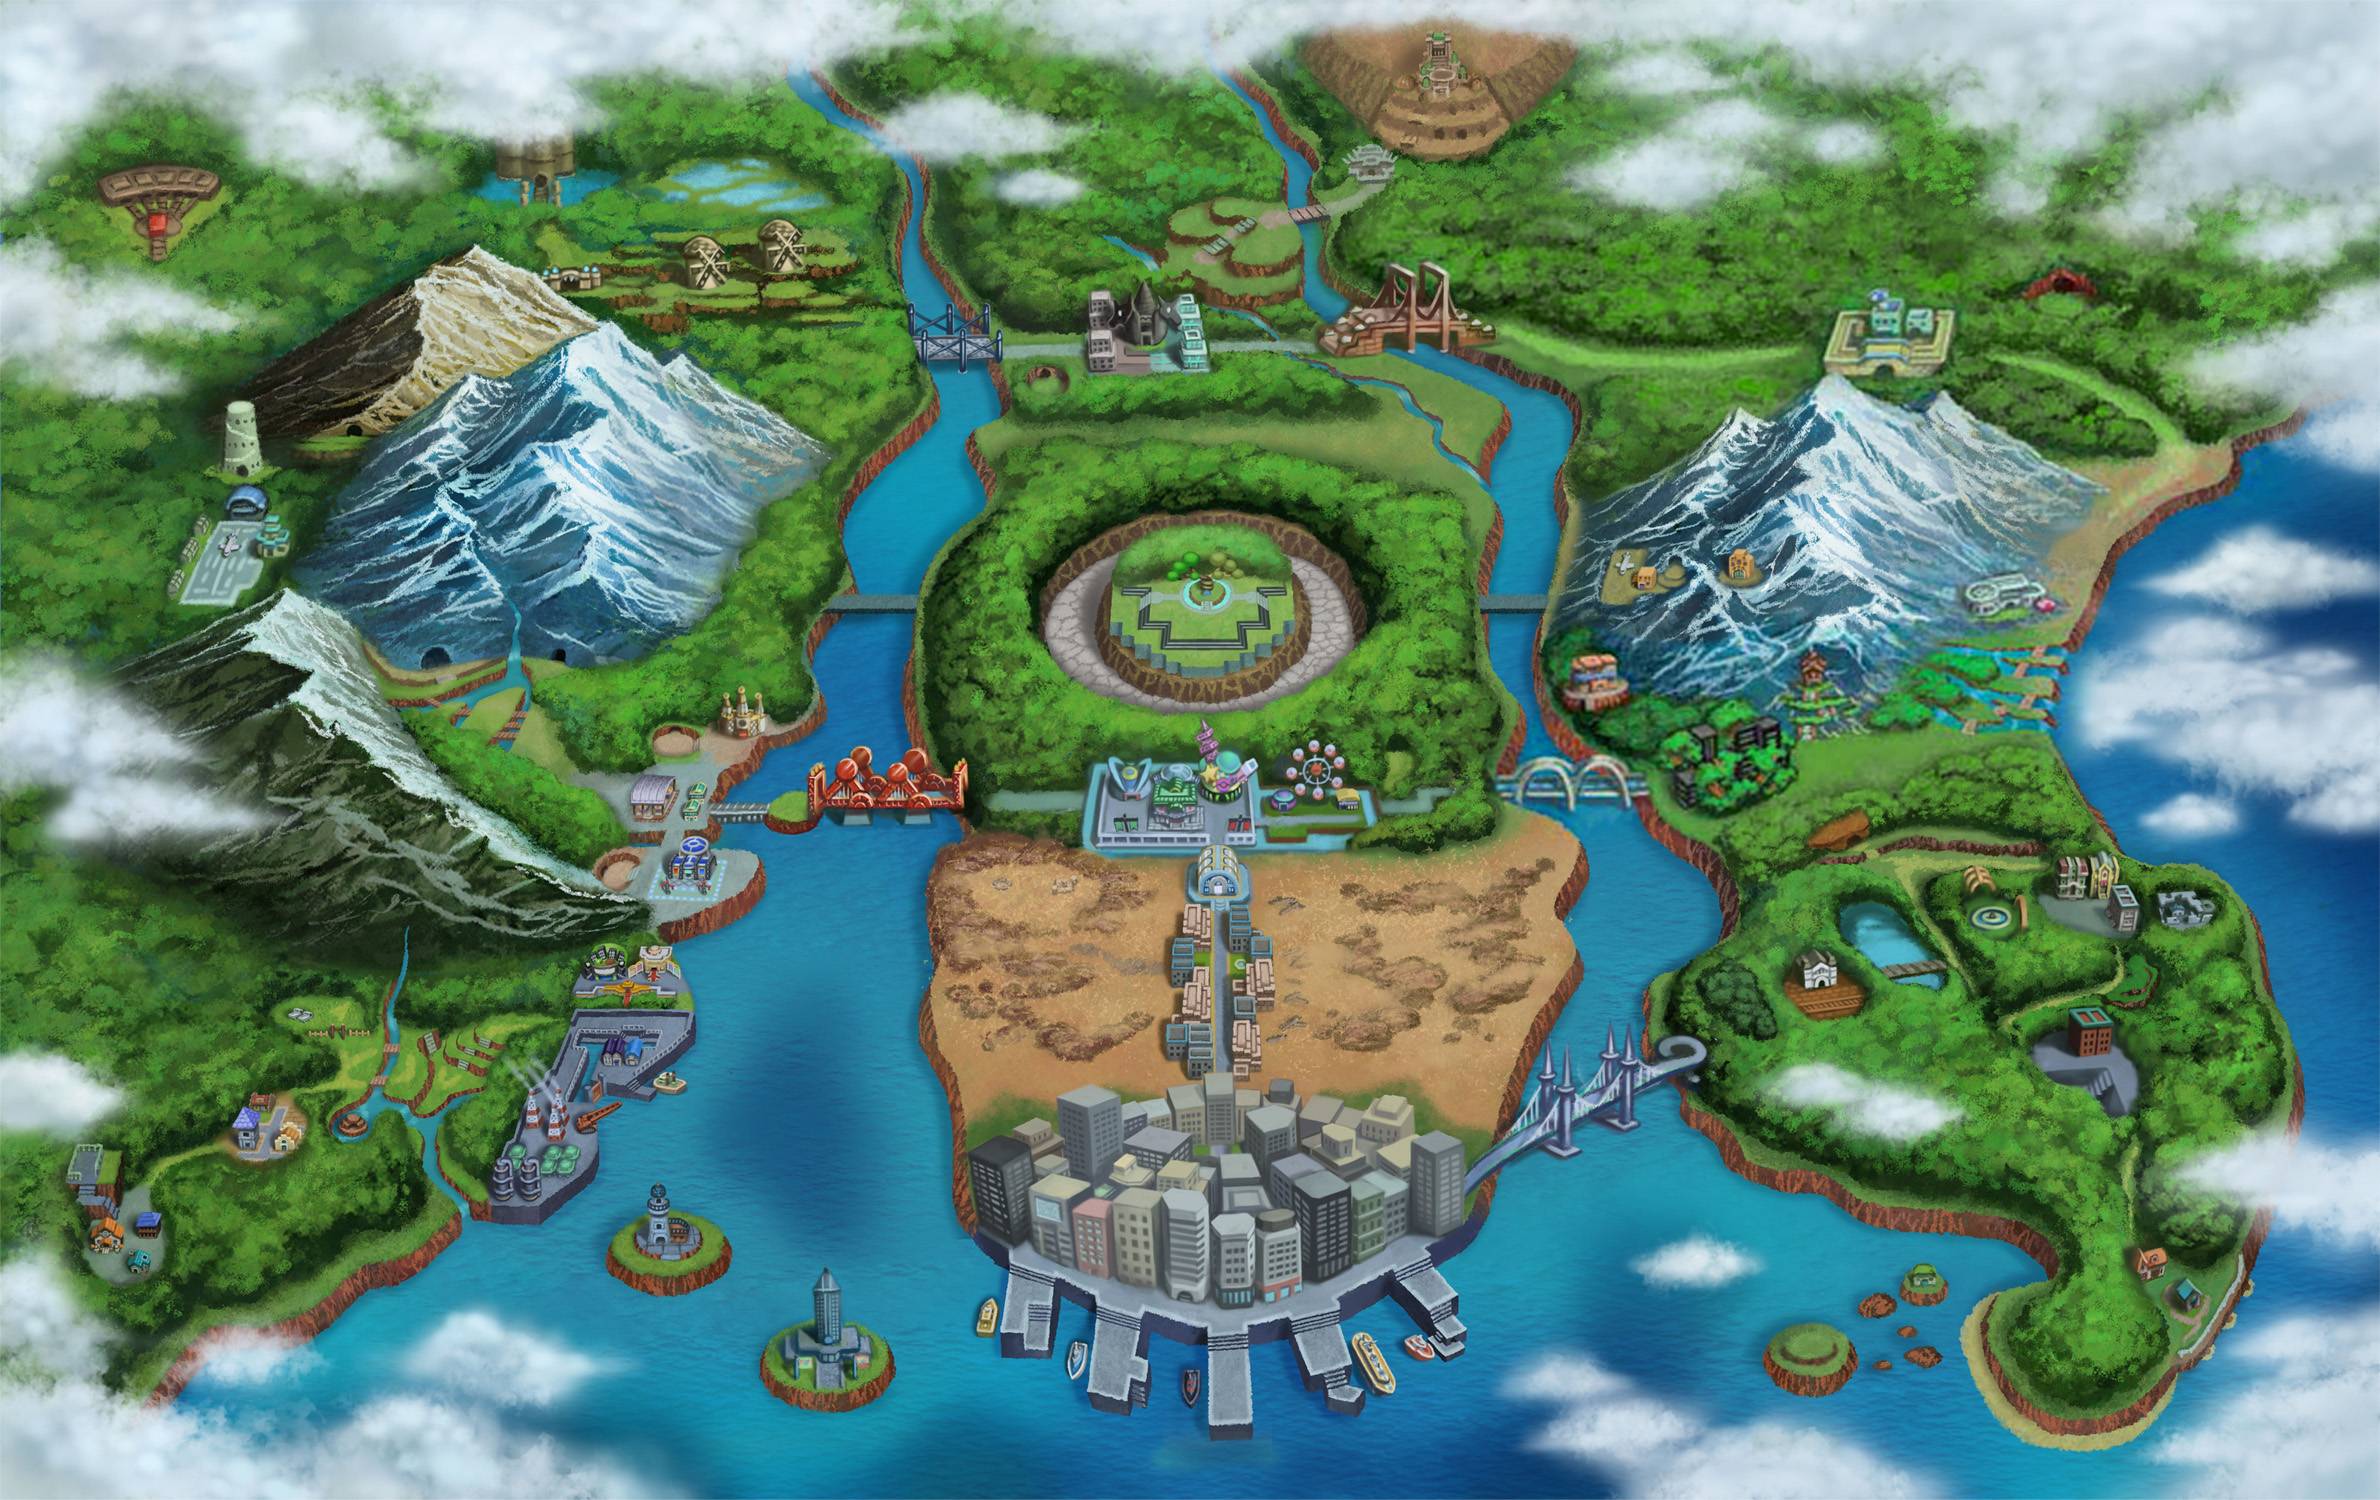 La région d'Unys est très appréciée des joueurs Pokémon